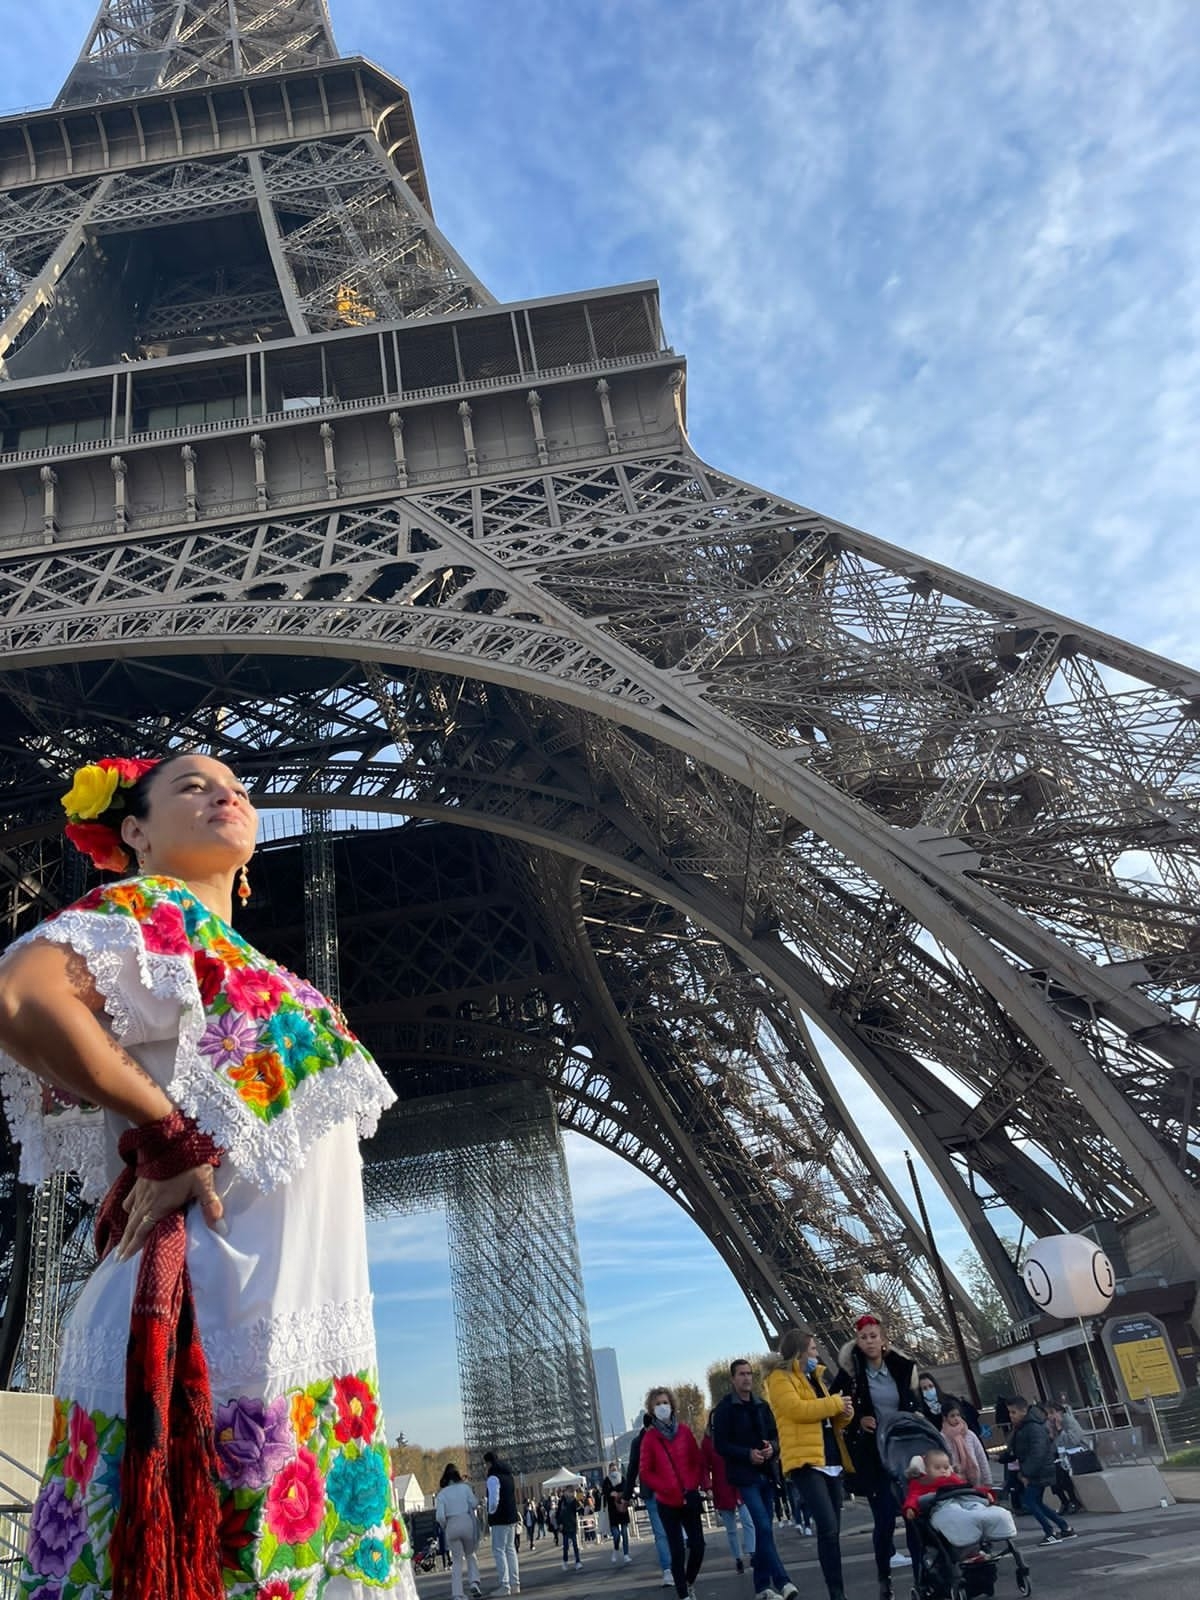 La yucateca posó en varios puntos de la Torre Eiffel de París, con su traje típico en color blanco y colores llamativos en sus flores bordadas a mano